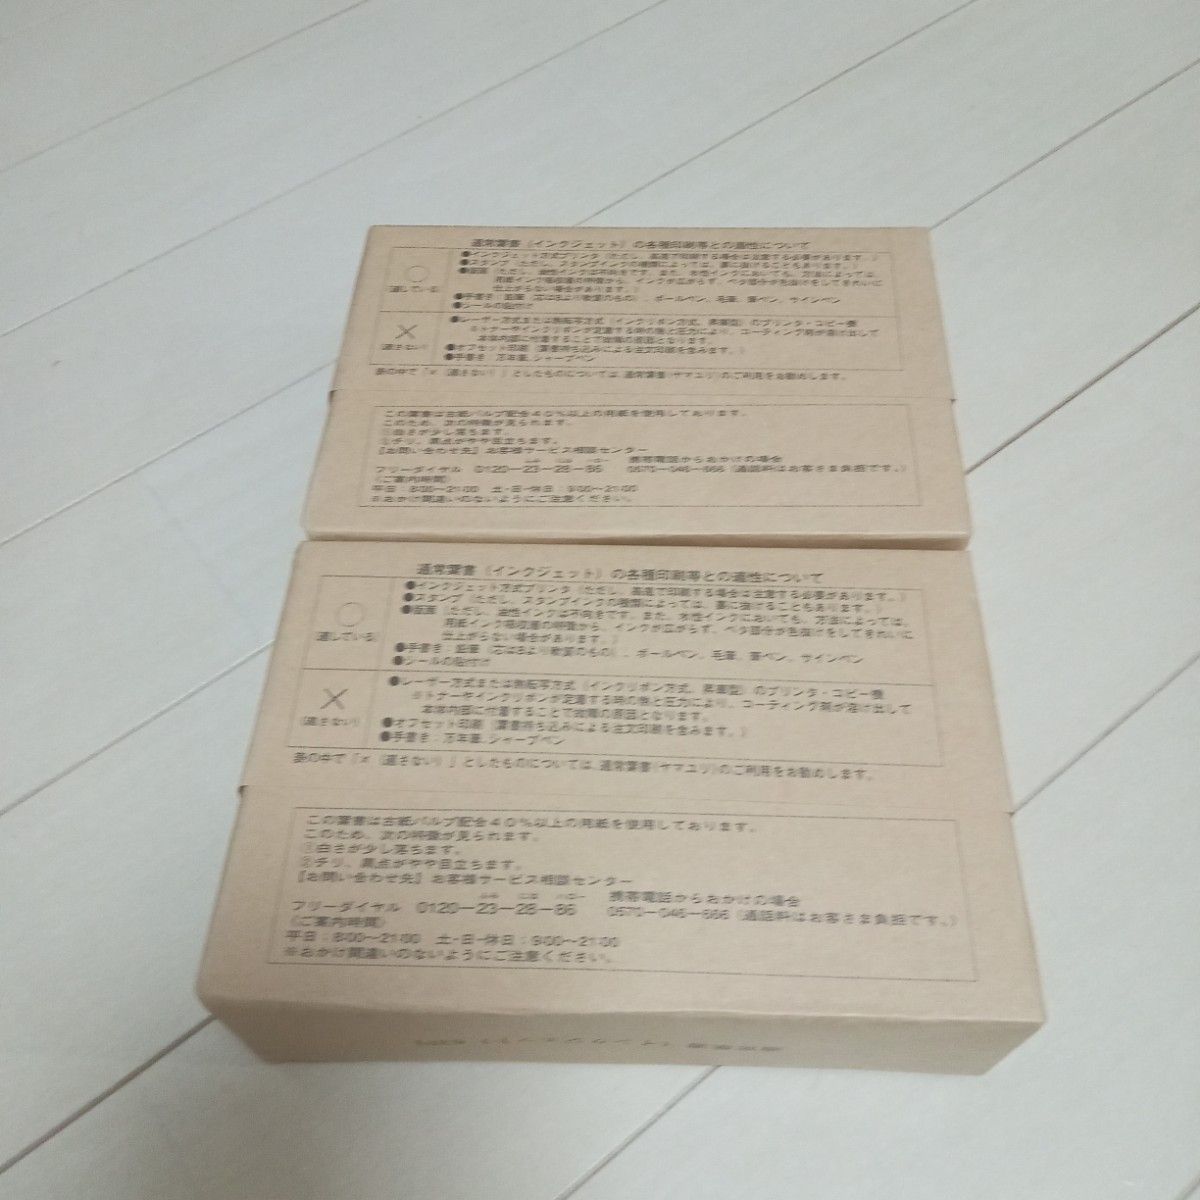 即日発送」未使用 未開封 官製ハガキ63円 インクジェット400枚 通常